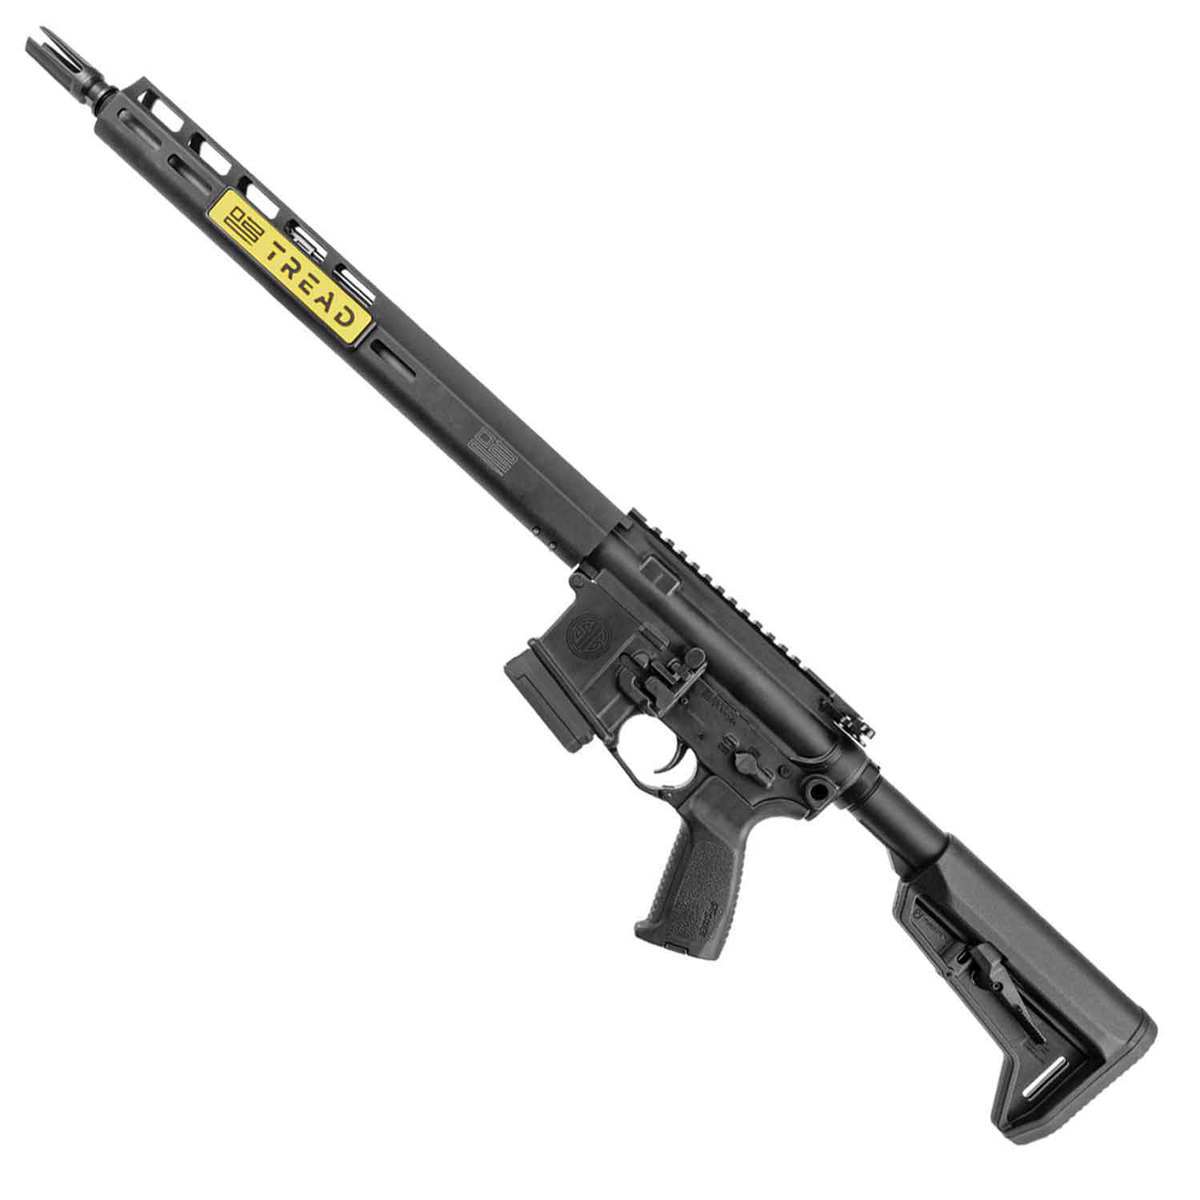 sig m400 tread 556mm nato 16in black anodized semi automatic rifle 101 rounds colorado compliant 1682670 1